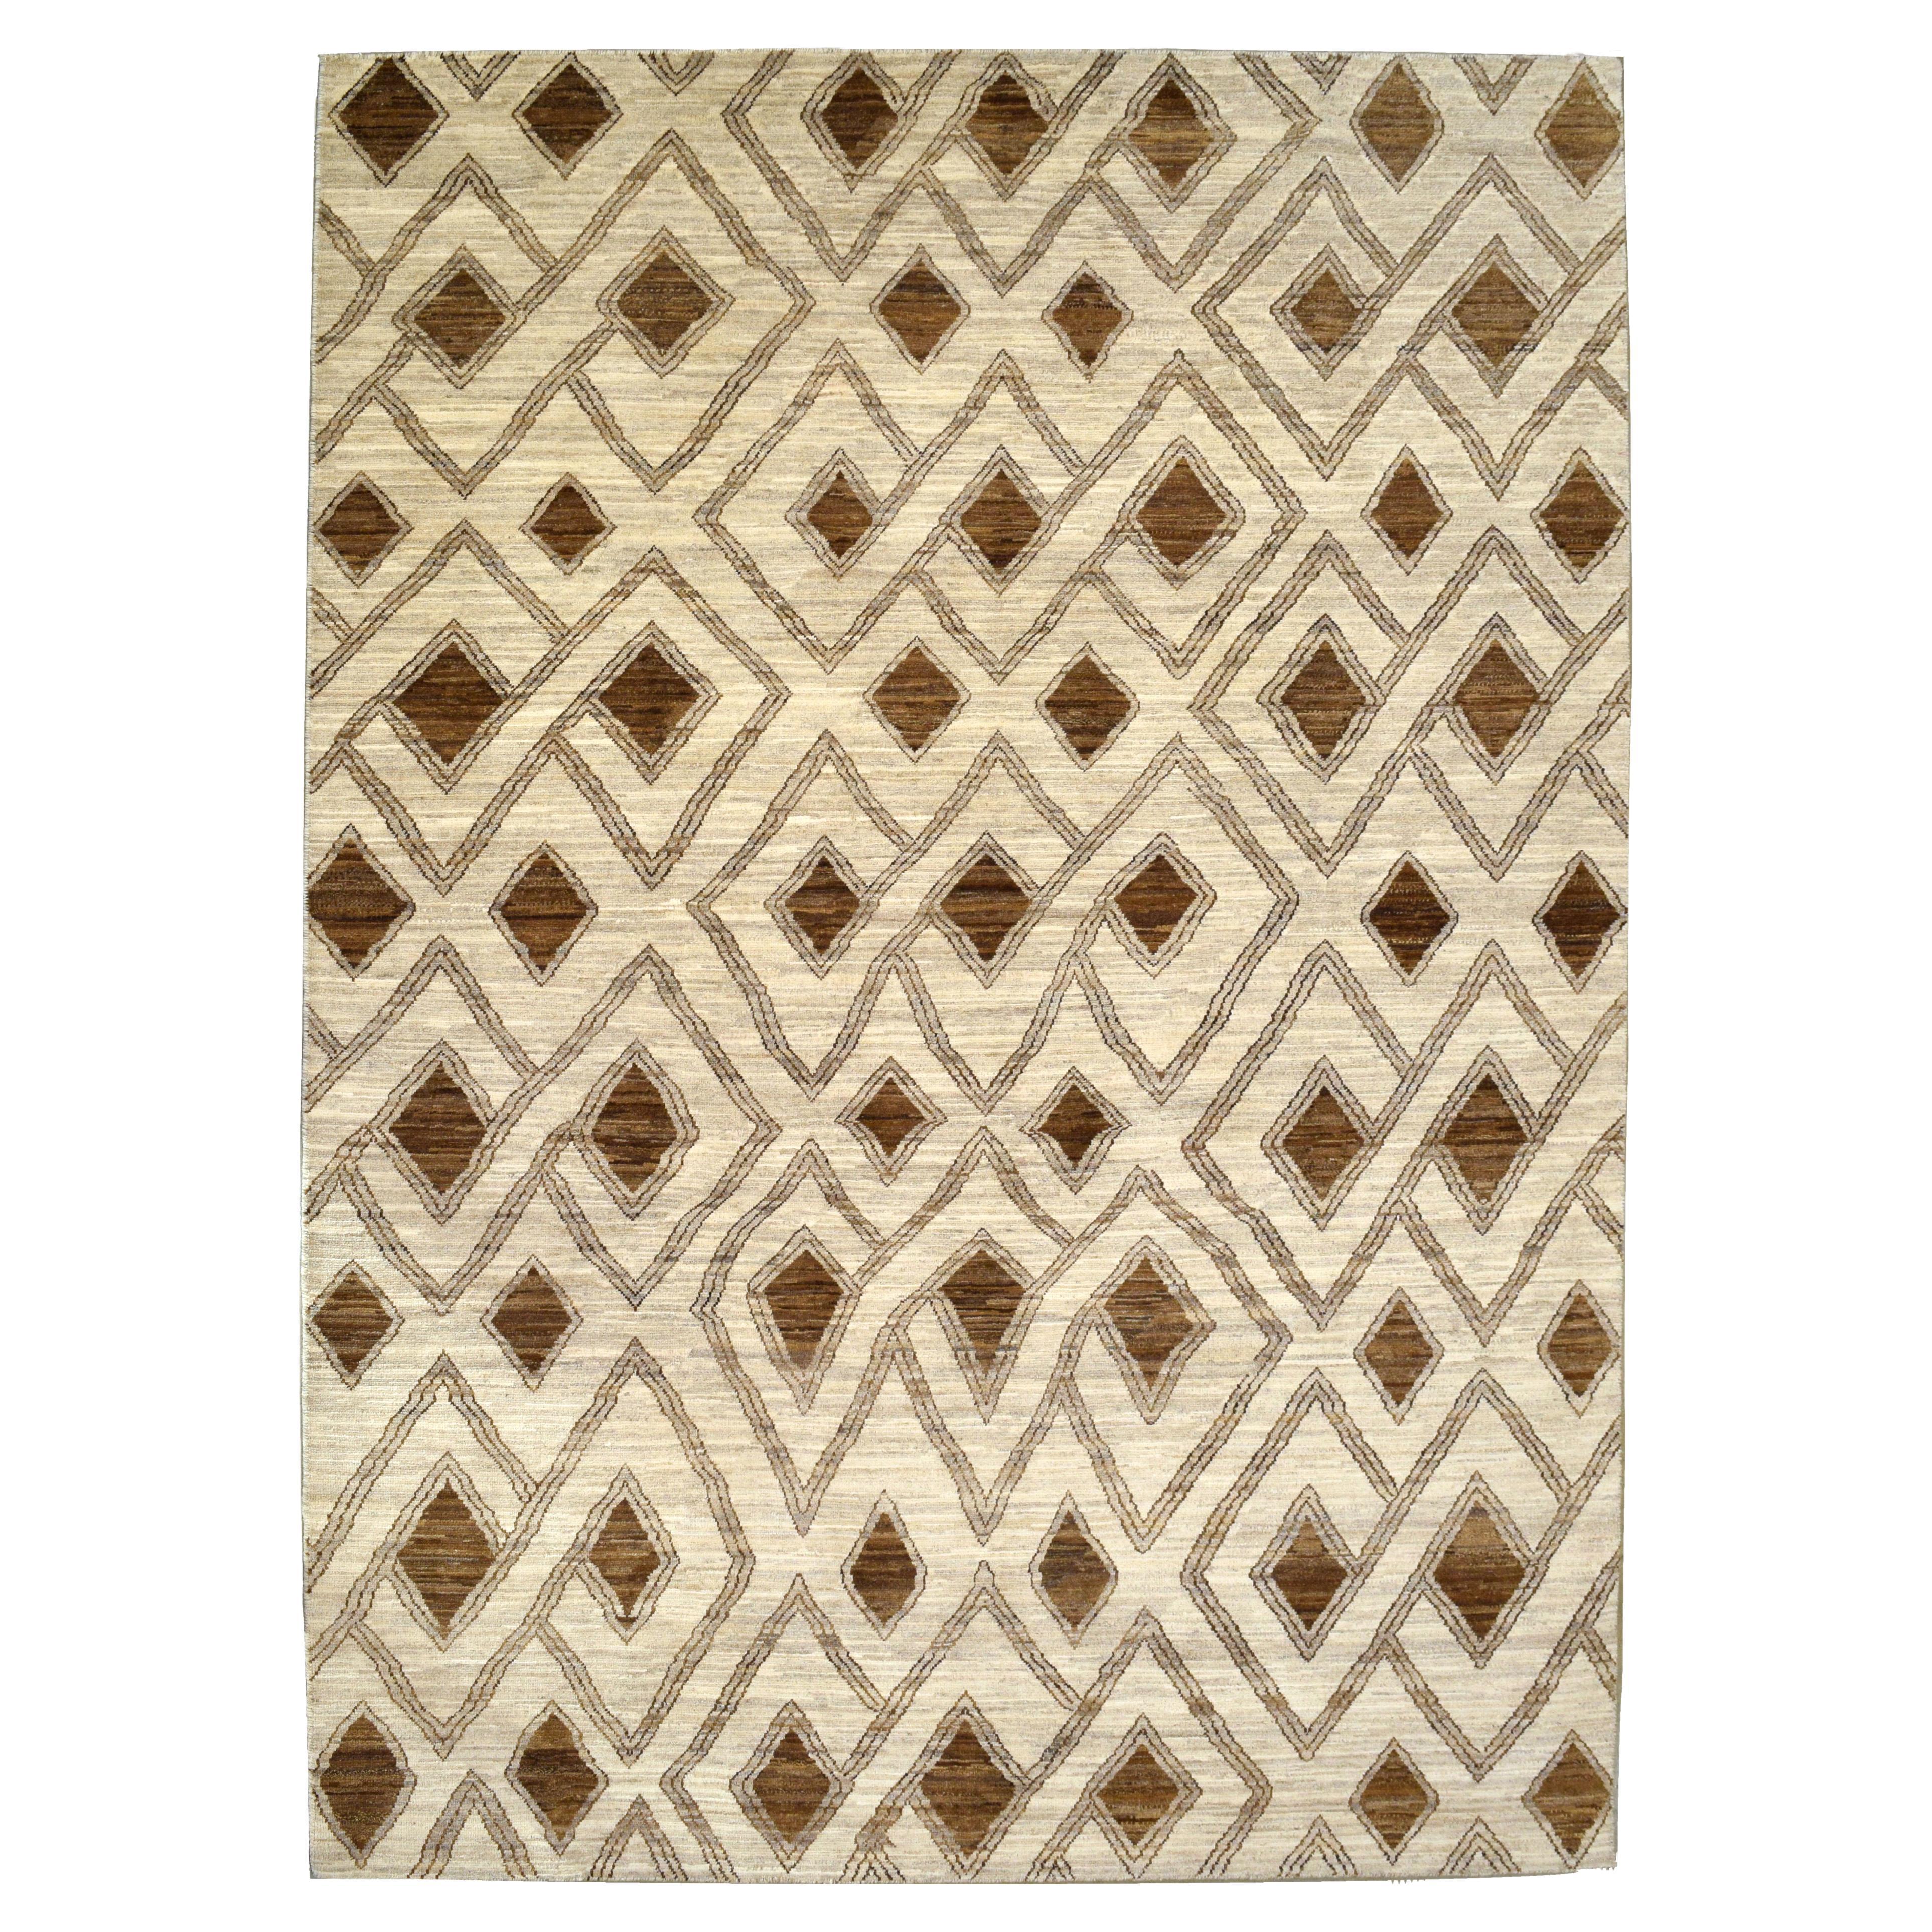 The Moderns Modern Geometric Neutral Wool Carpet in Brown and Cream, 6' x 9' (Tapis de laine géométrique neutre en brun et crème, 6' x 9')